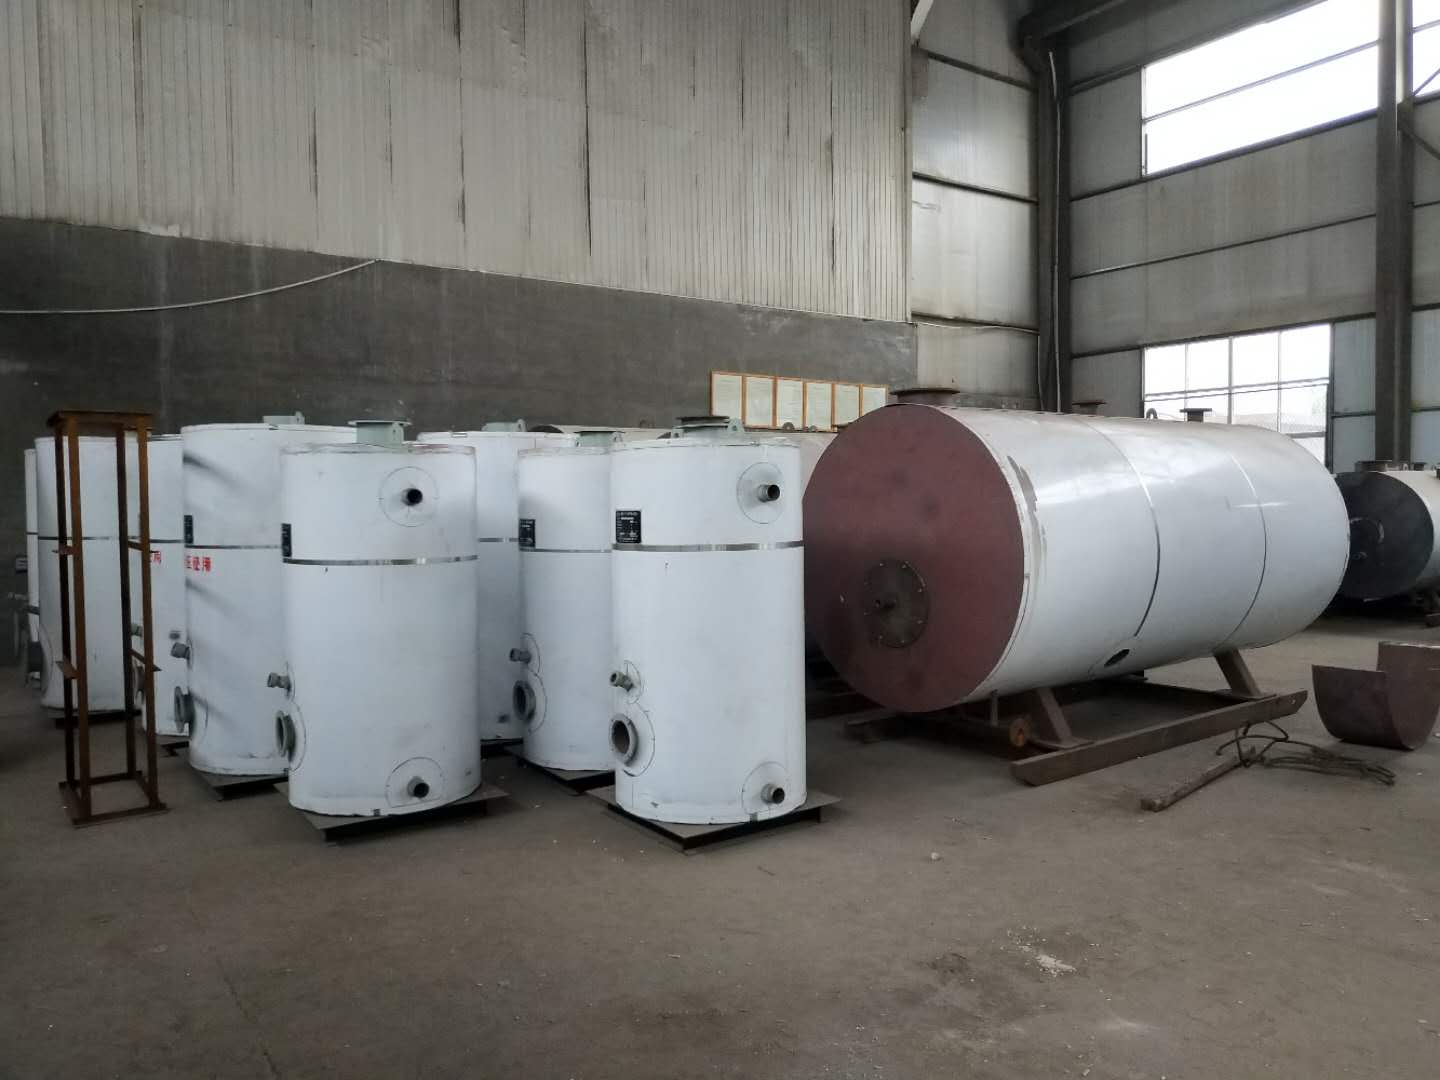 山东龙兴集团莱州市锅炉热能设备有限公司